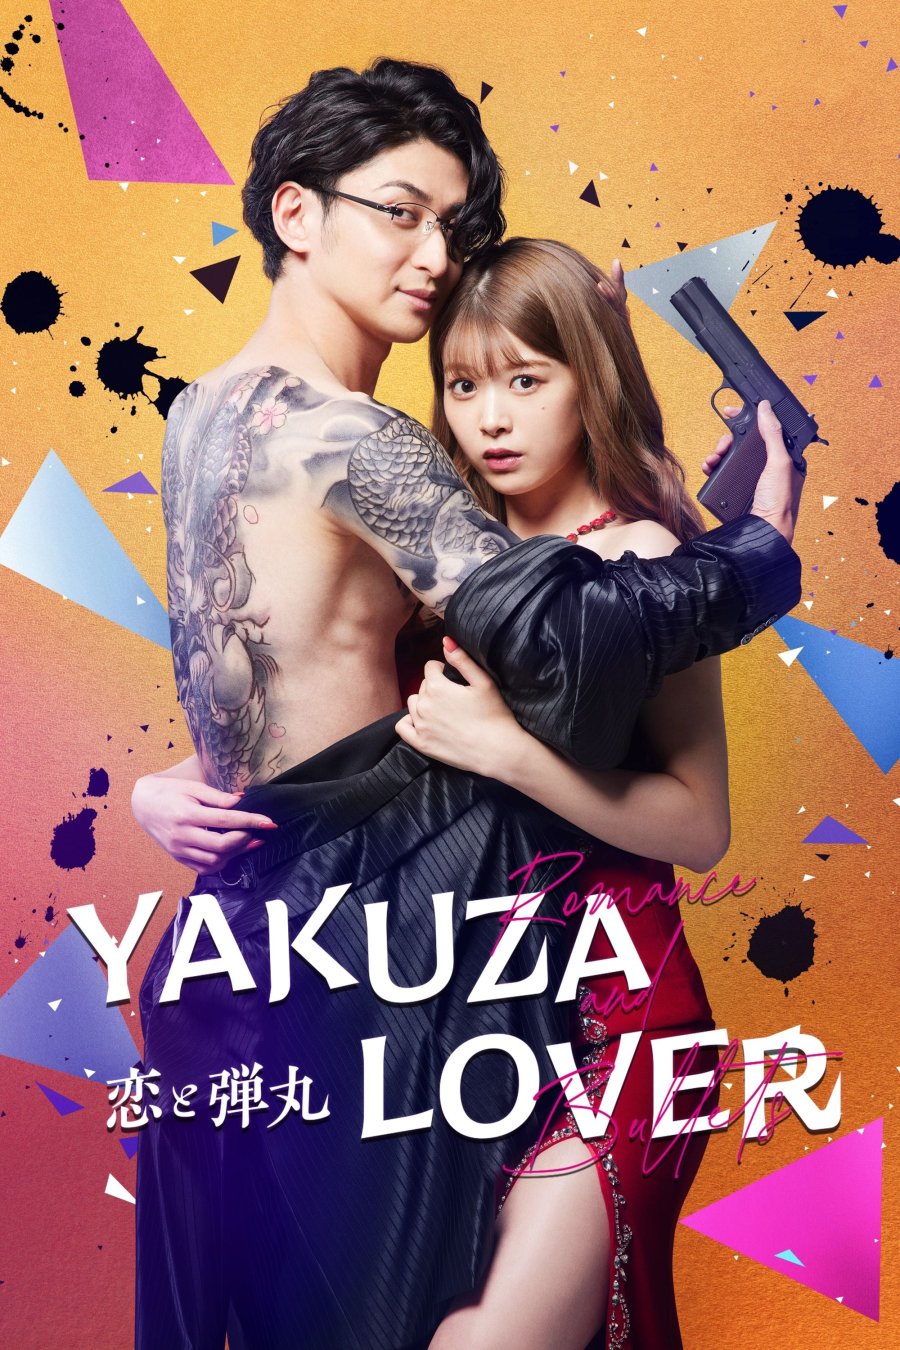 [รีวิว] Yakuza Lover: คอมเมดี้เตียงไม่ว่าง ฉูดฉาด บาดใจยากูซ่า